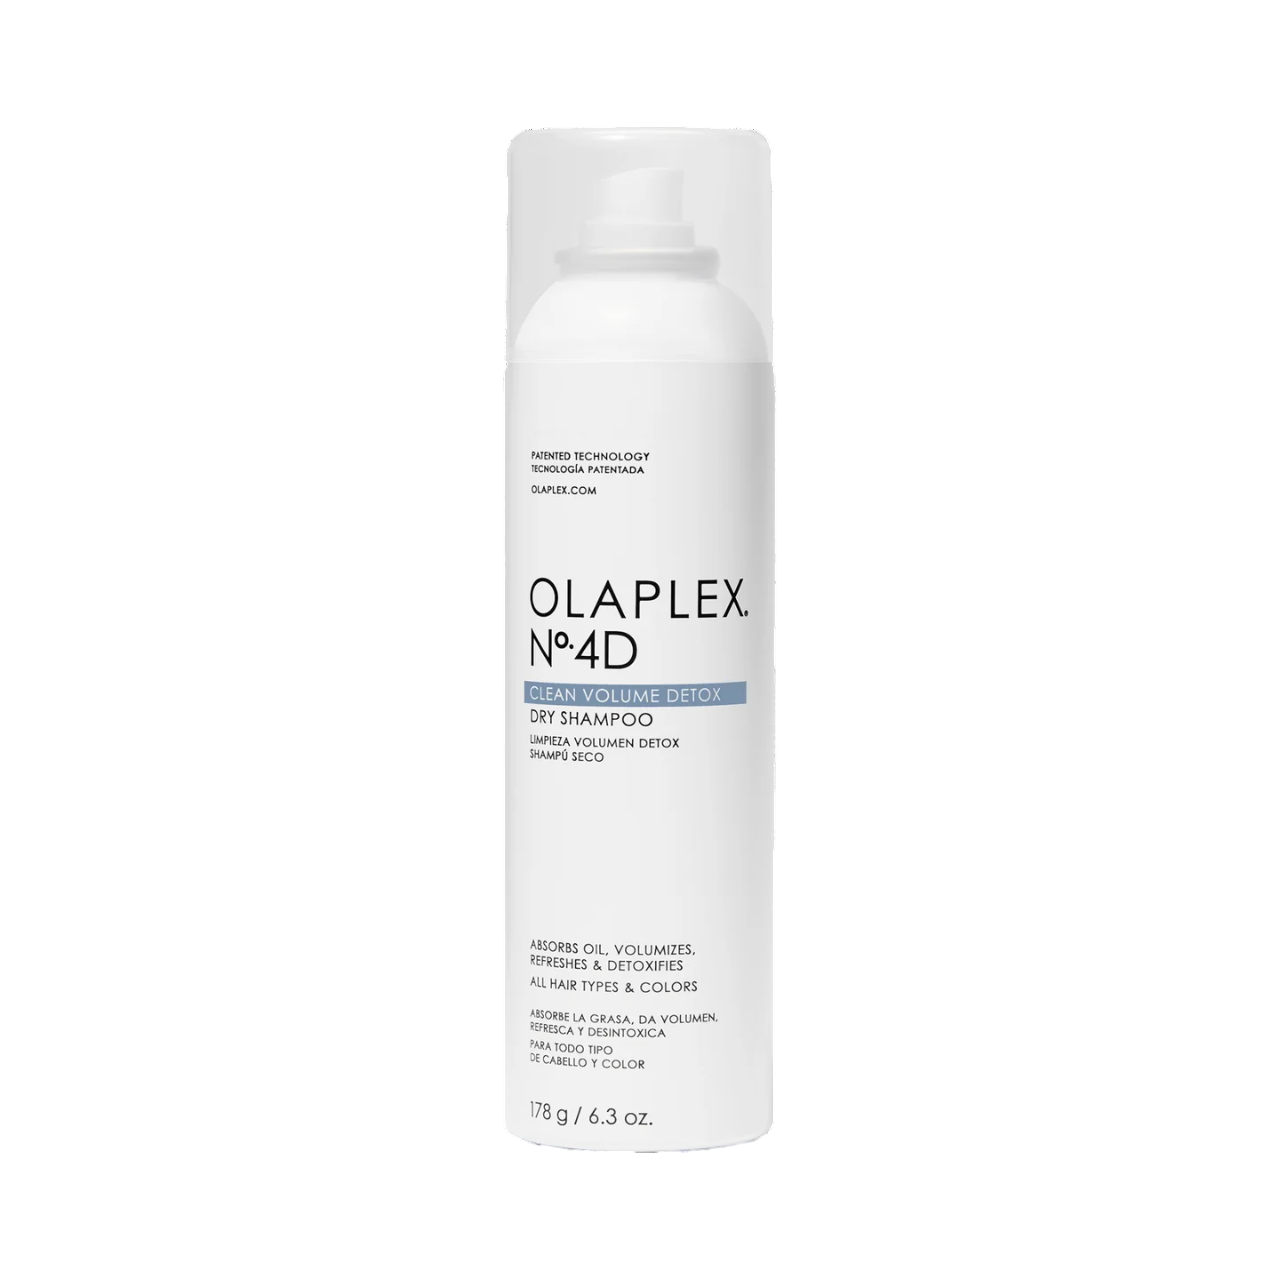 Olaplex No.4d Dry Shampoo 178g